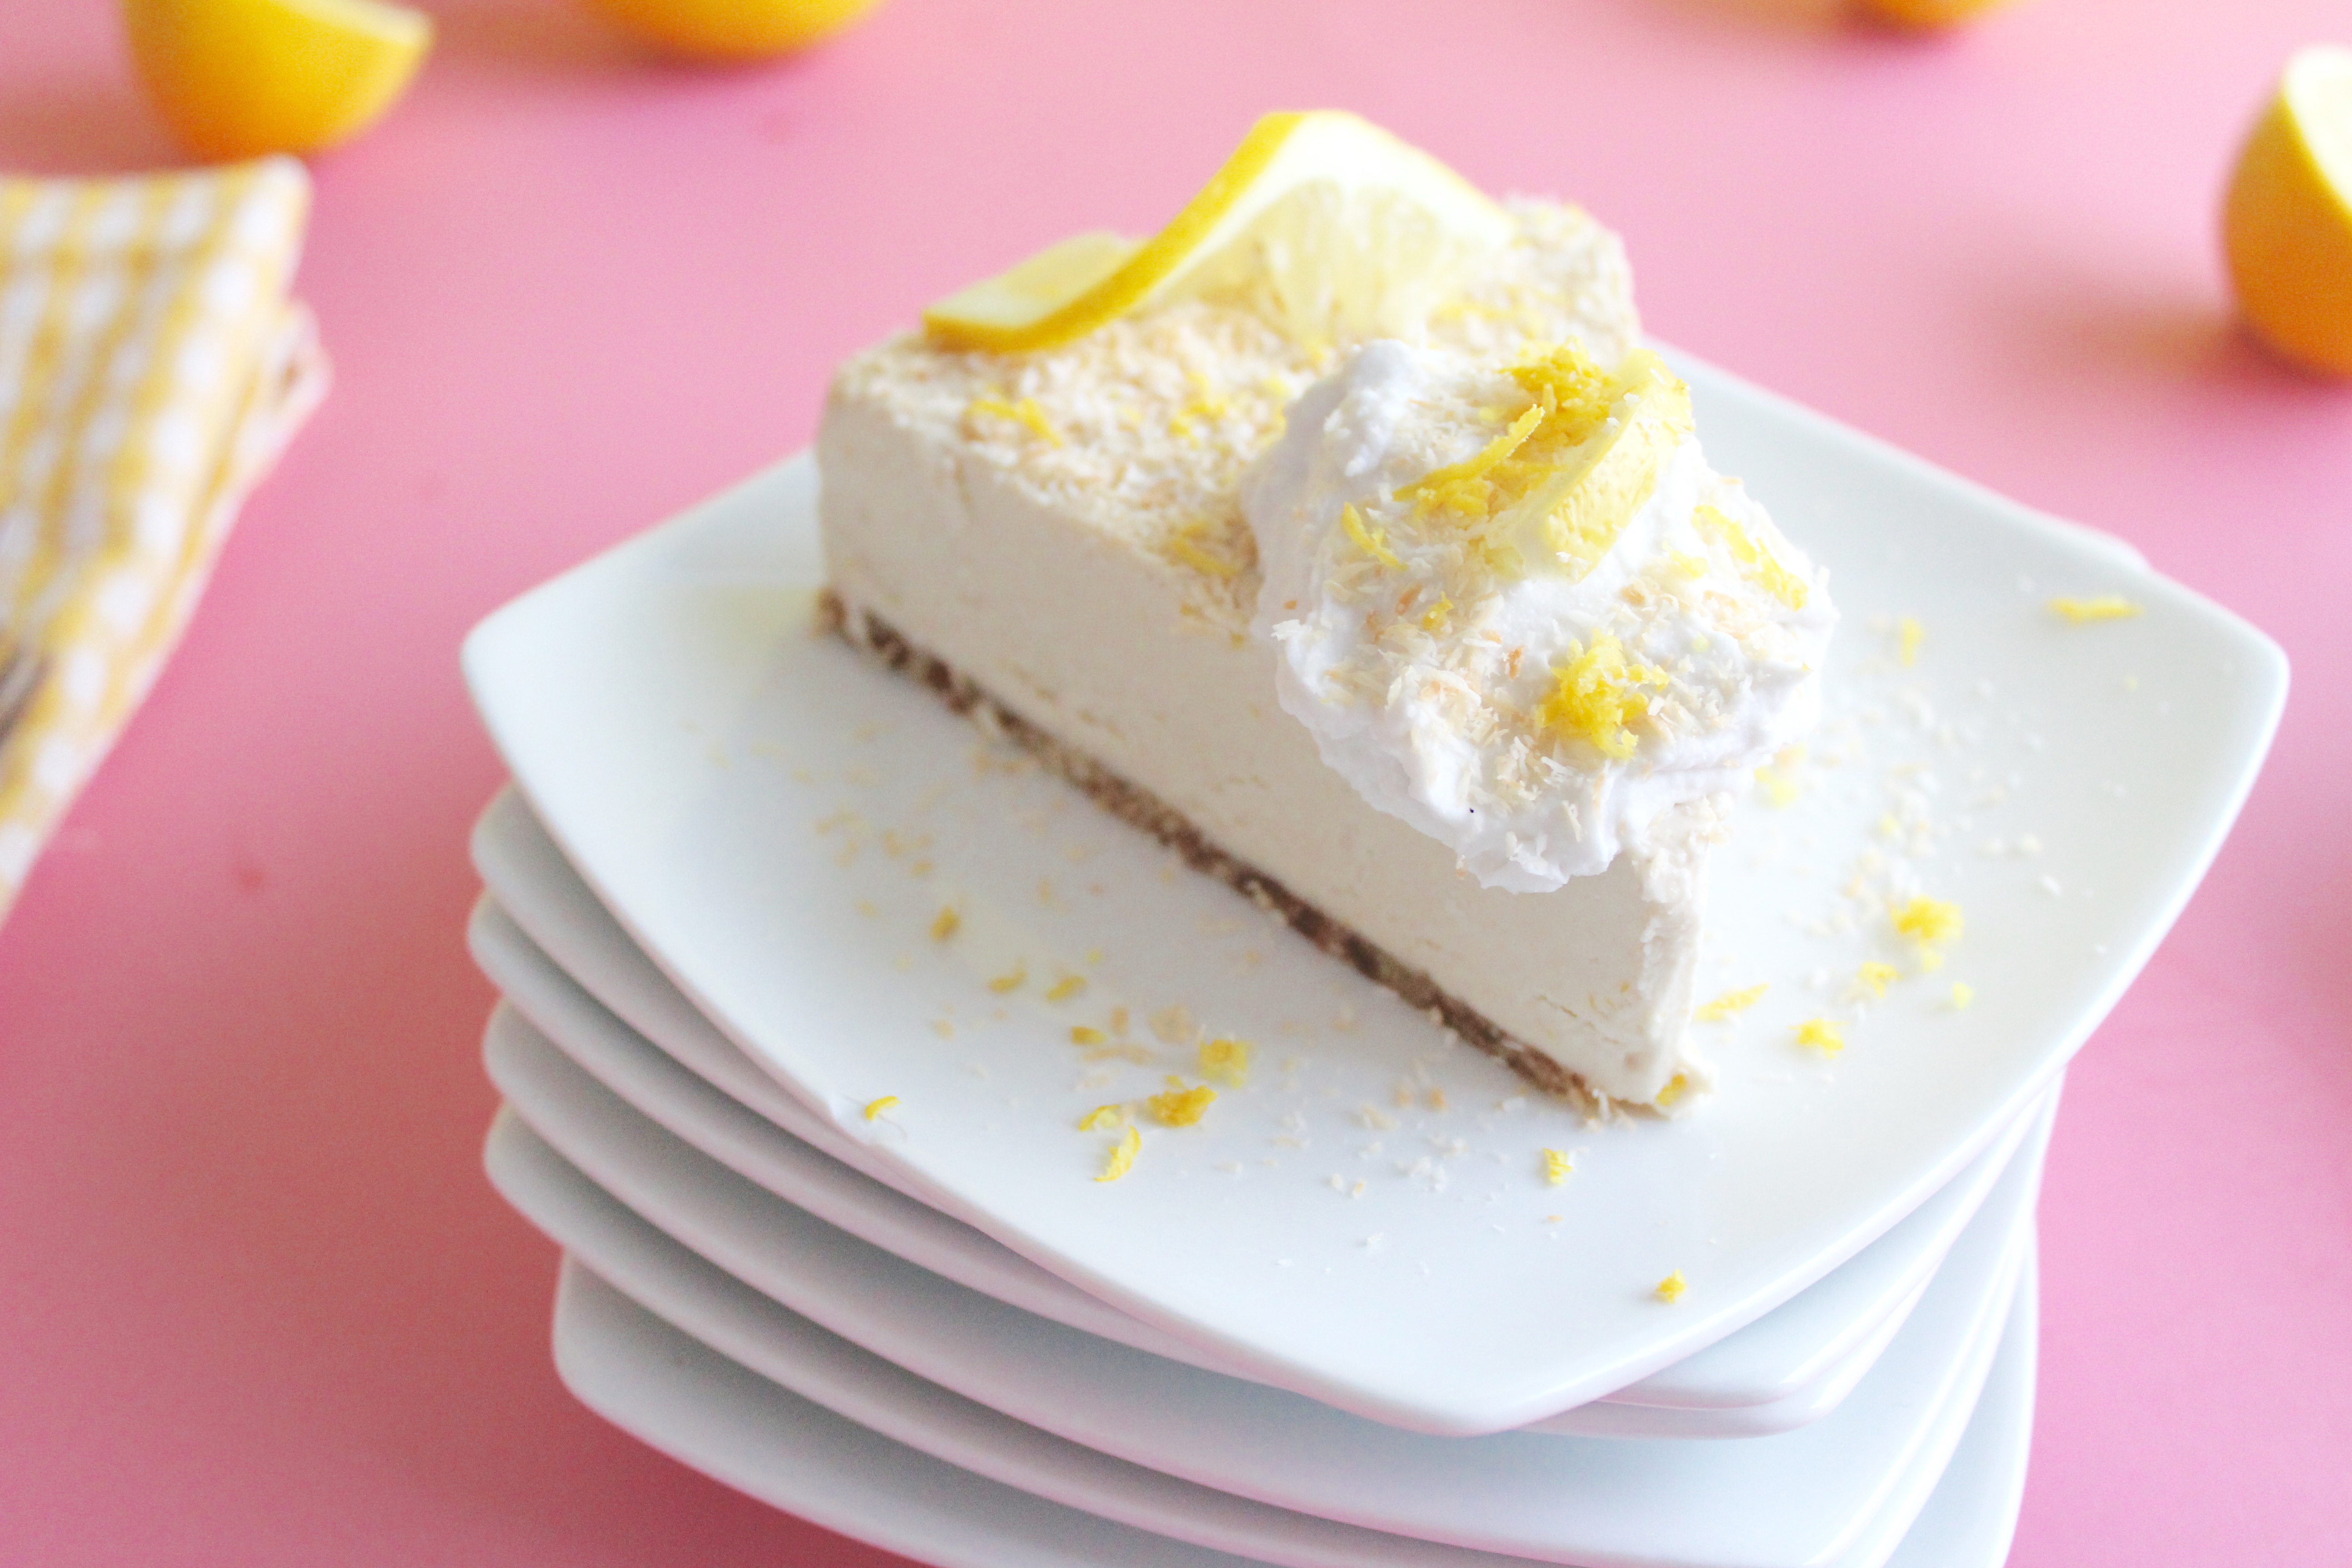 vegan, naturally sweetened lemon coconut cheesecake thats gluten free and dairy free